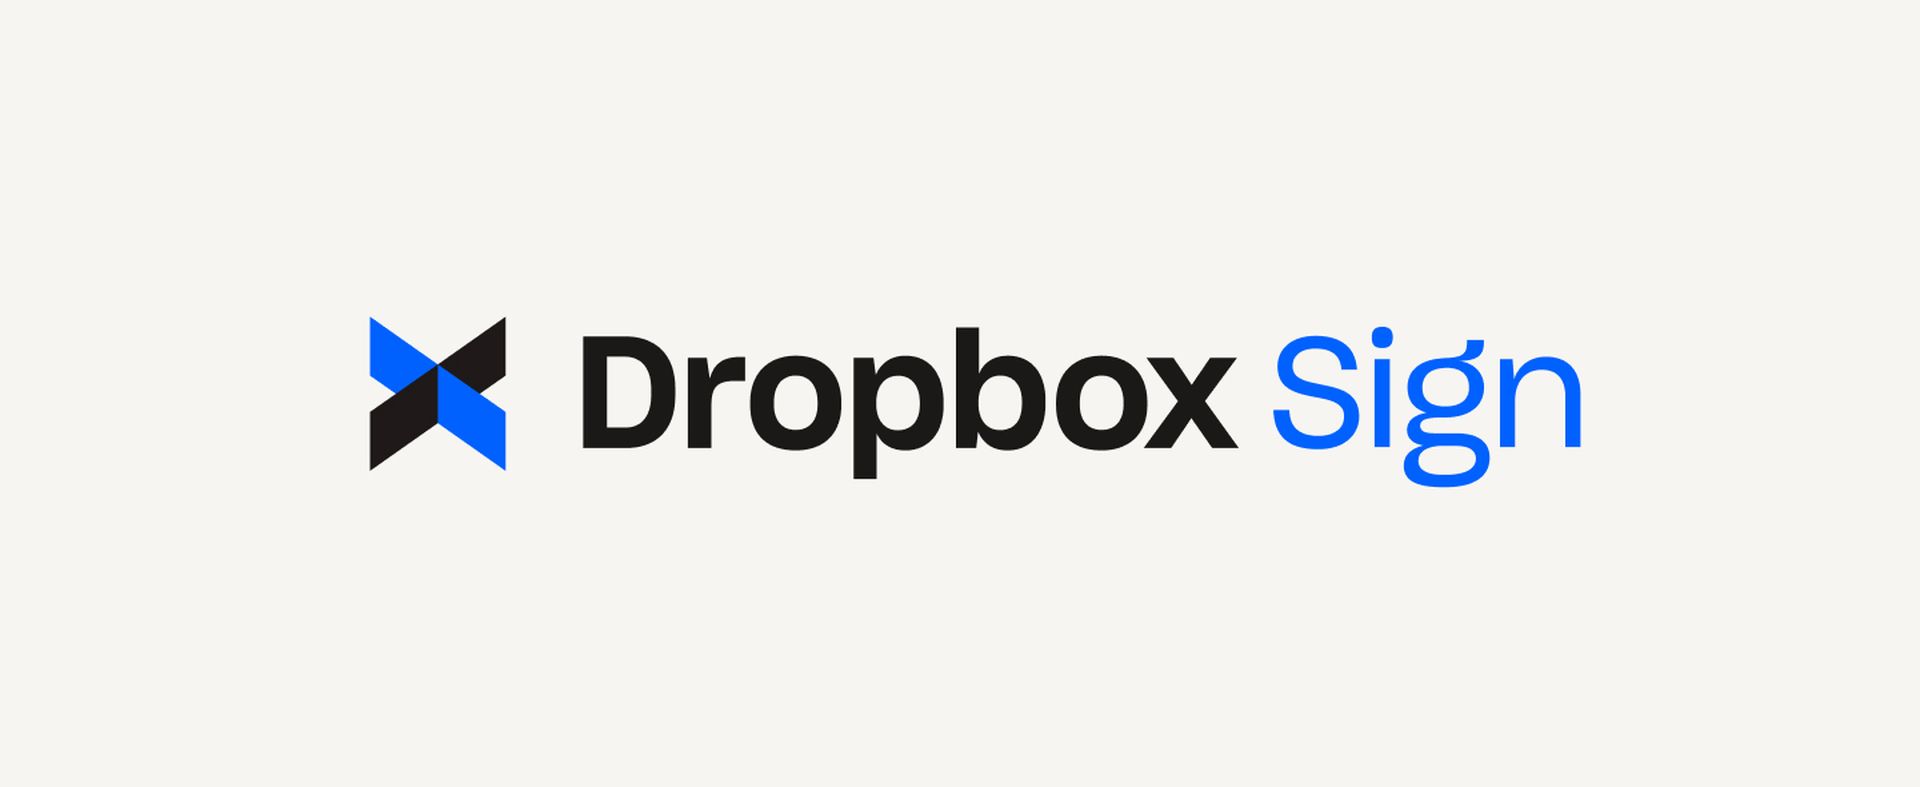 De Dropbox Sign-aanval: een diepe duik in gegevensbeveiliging en implicaties